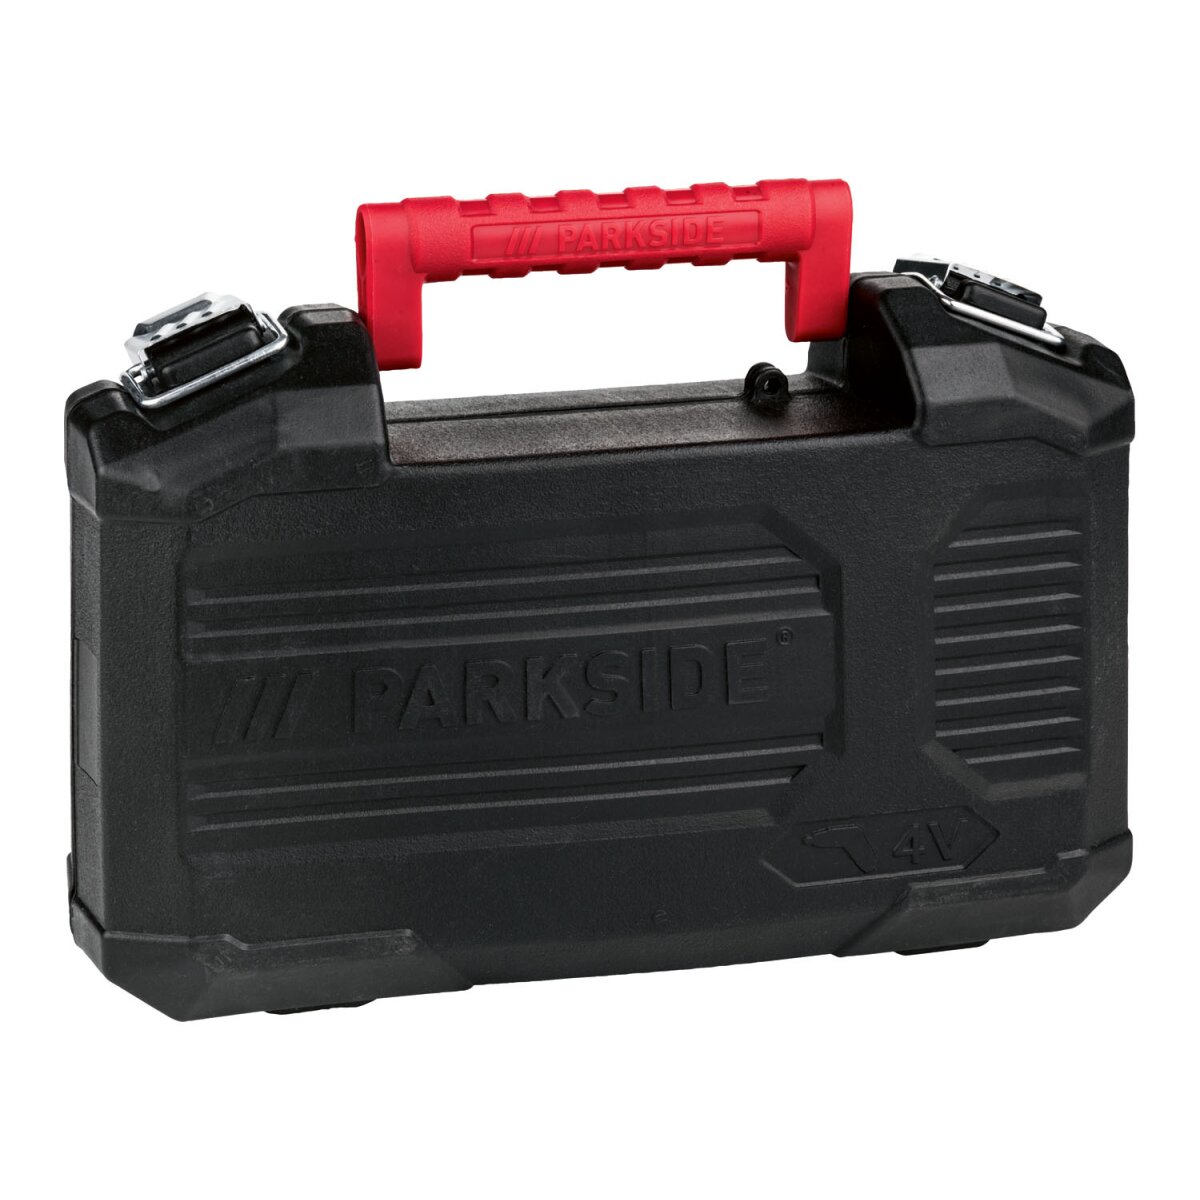 PARKSIDE® 4 V Akku-Stabschrauber »PSSA 4 B2« mit Bitset, 10 Nm - B-Ware  neuwertig, 20,99 €